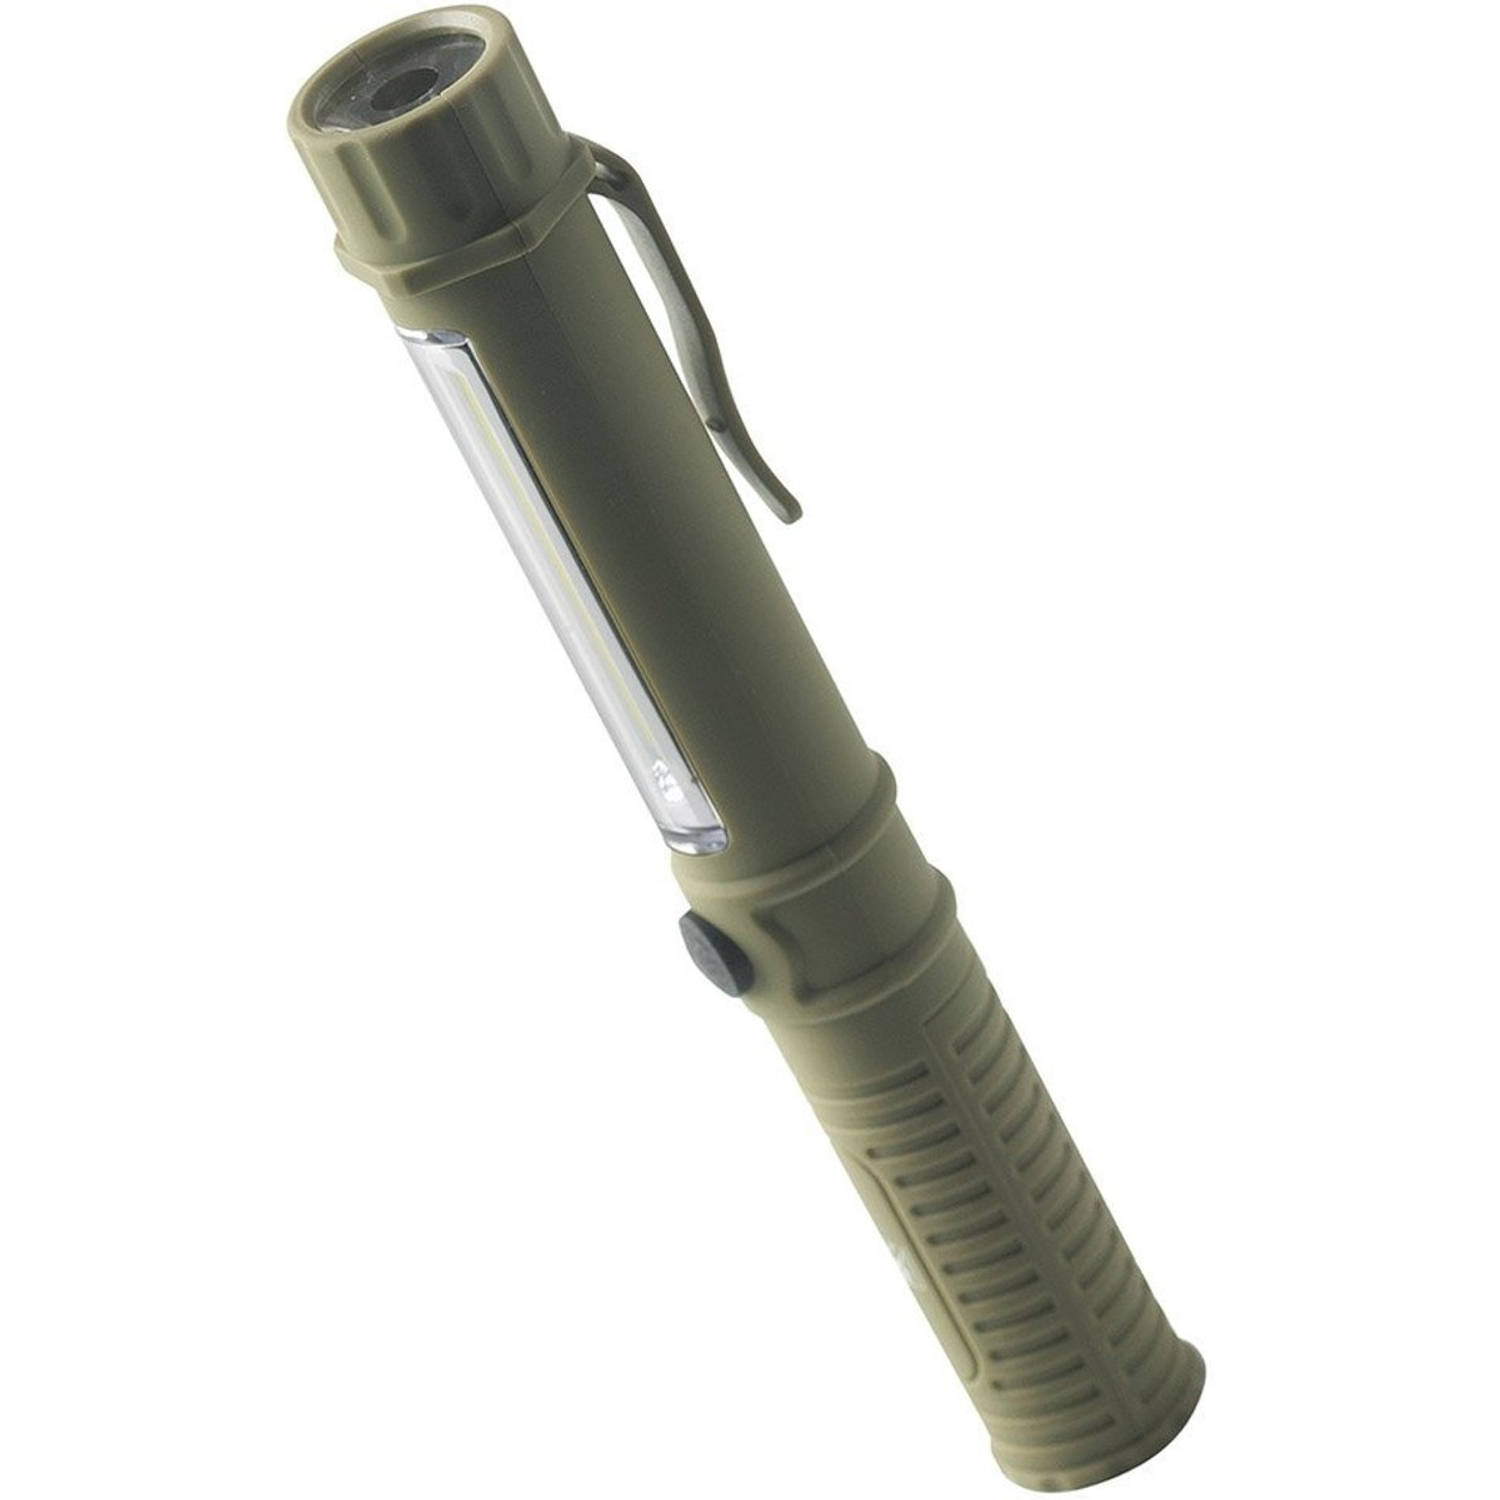 Macgyver Zaklamp Penlight Met Magneet 17 Cm Legergroen